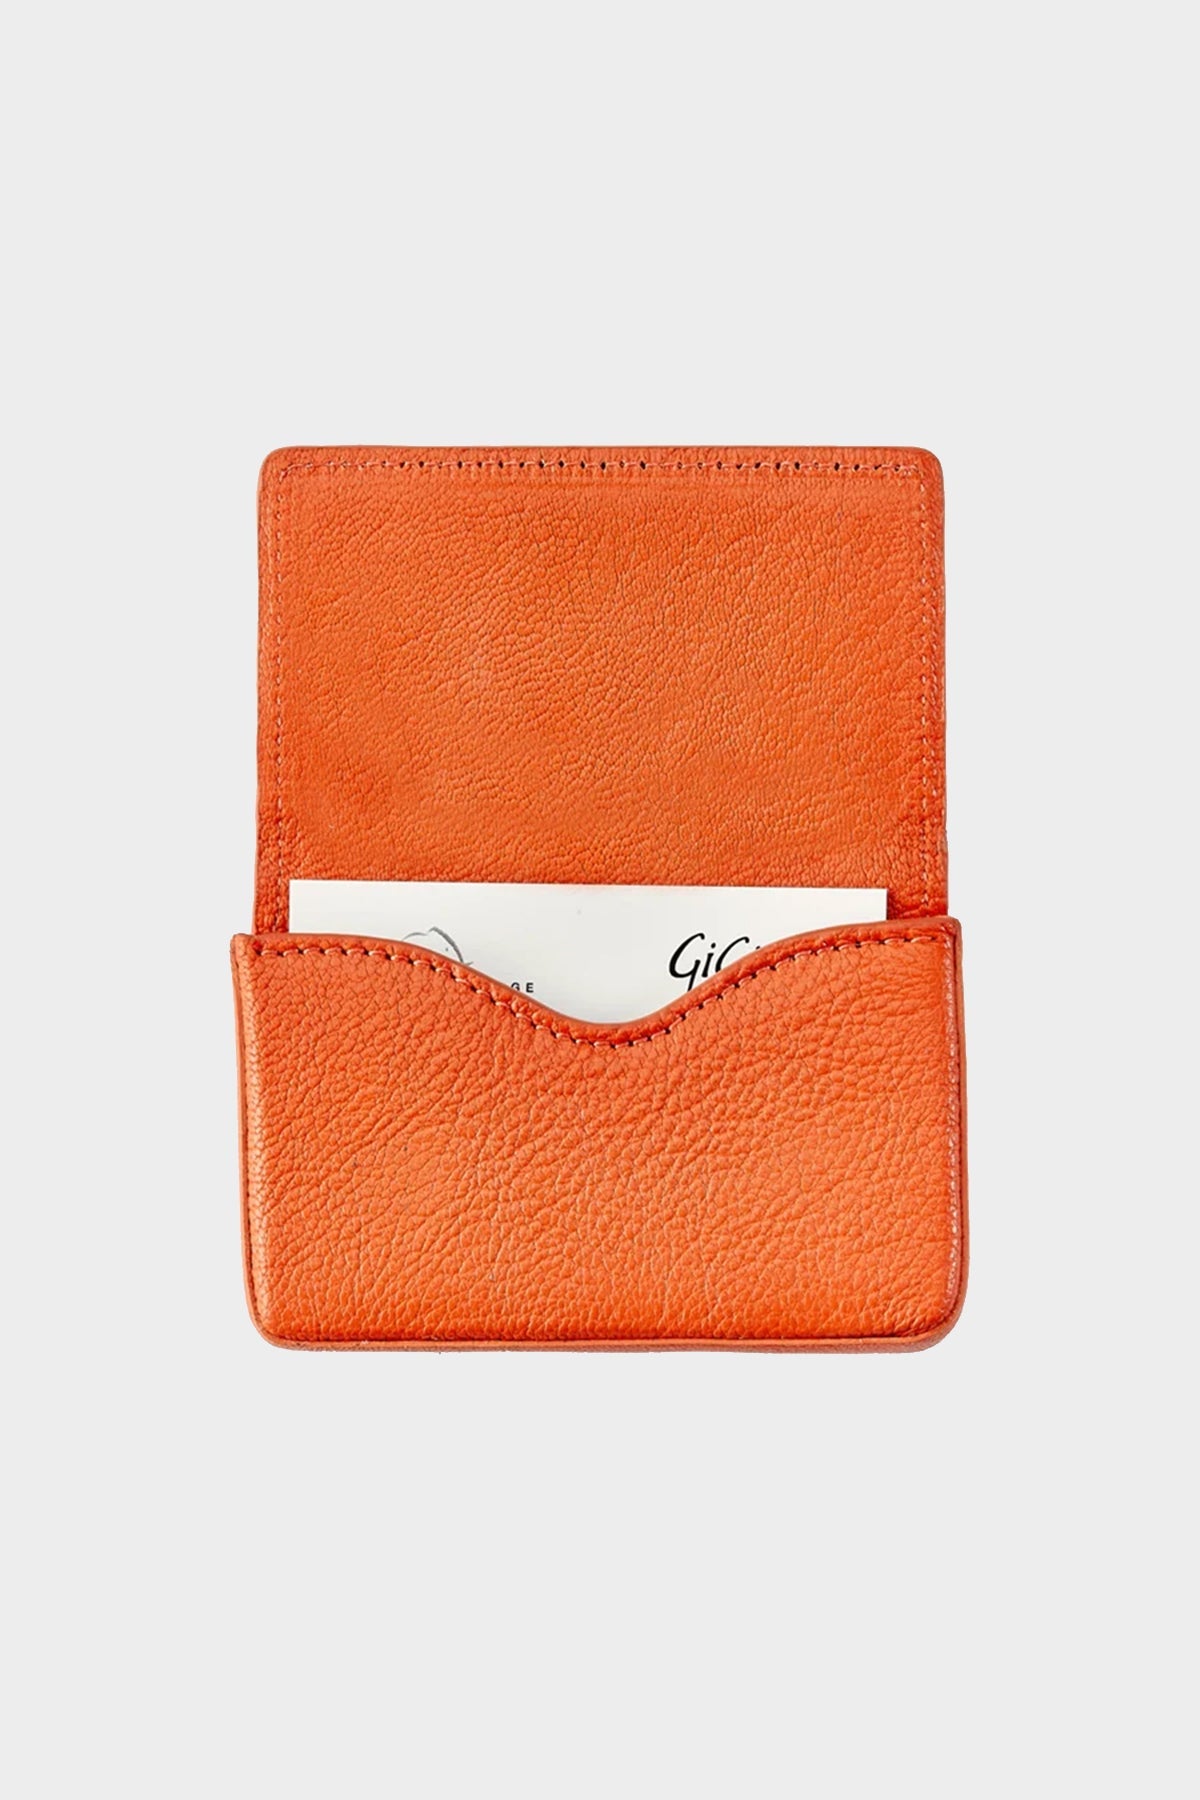 Hard Business Card Case in Orange - shop-olivia.com